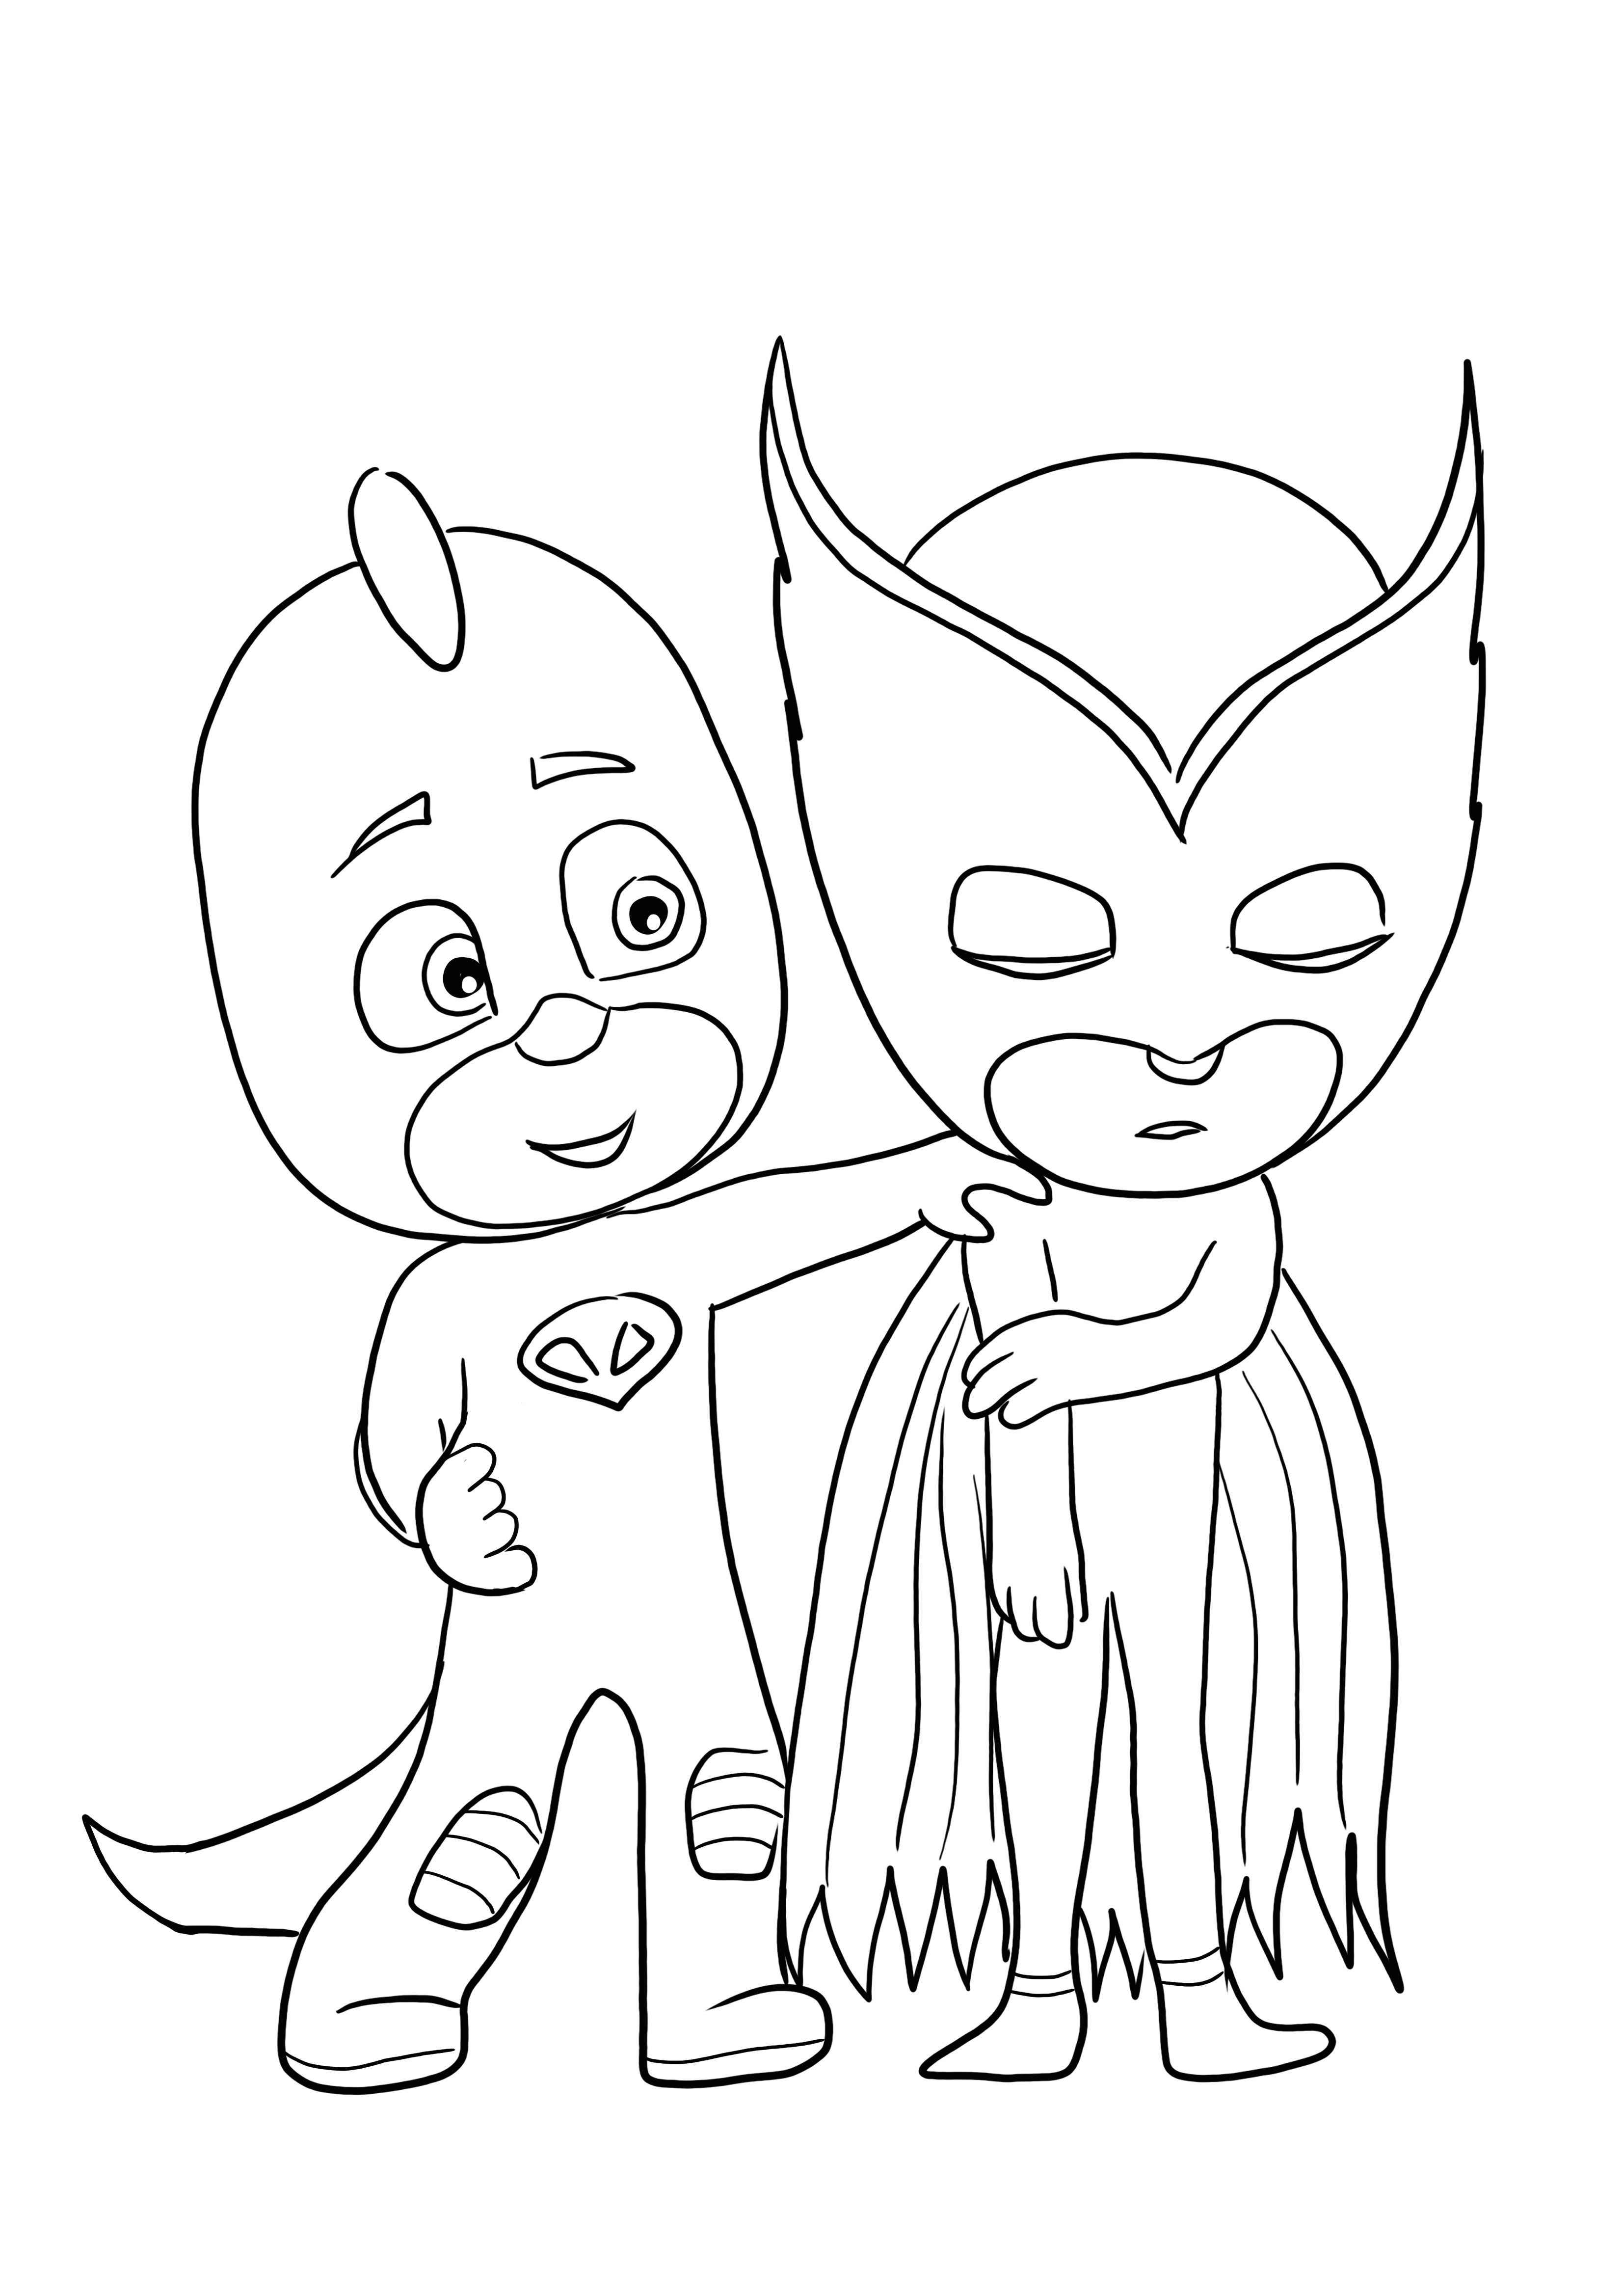 PJ Masks download gratuito de heróis e super folha para colorir